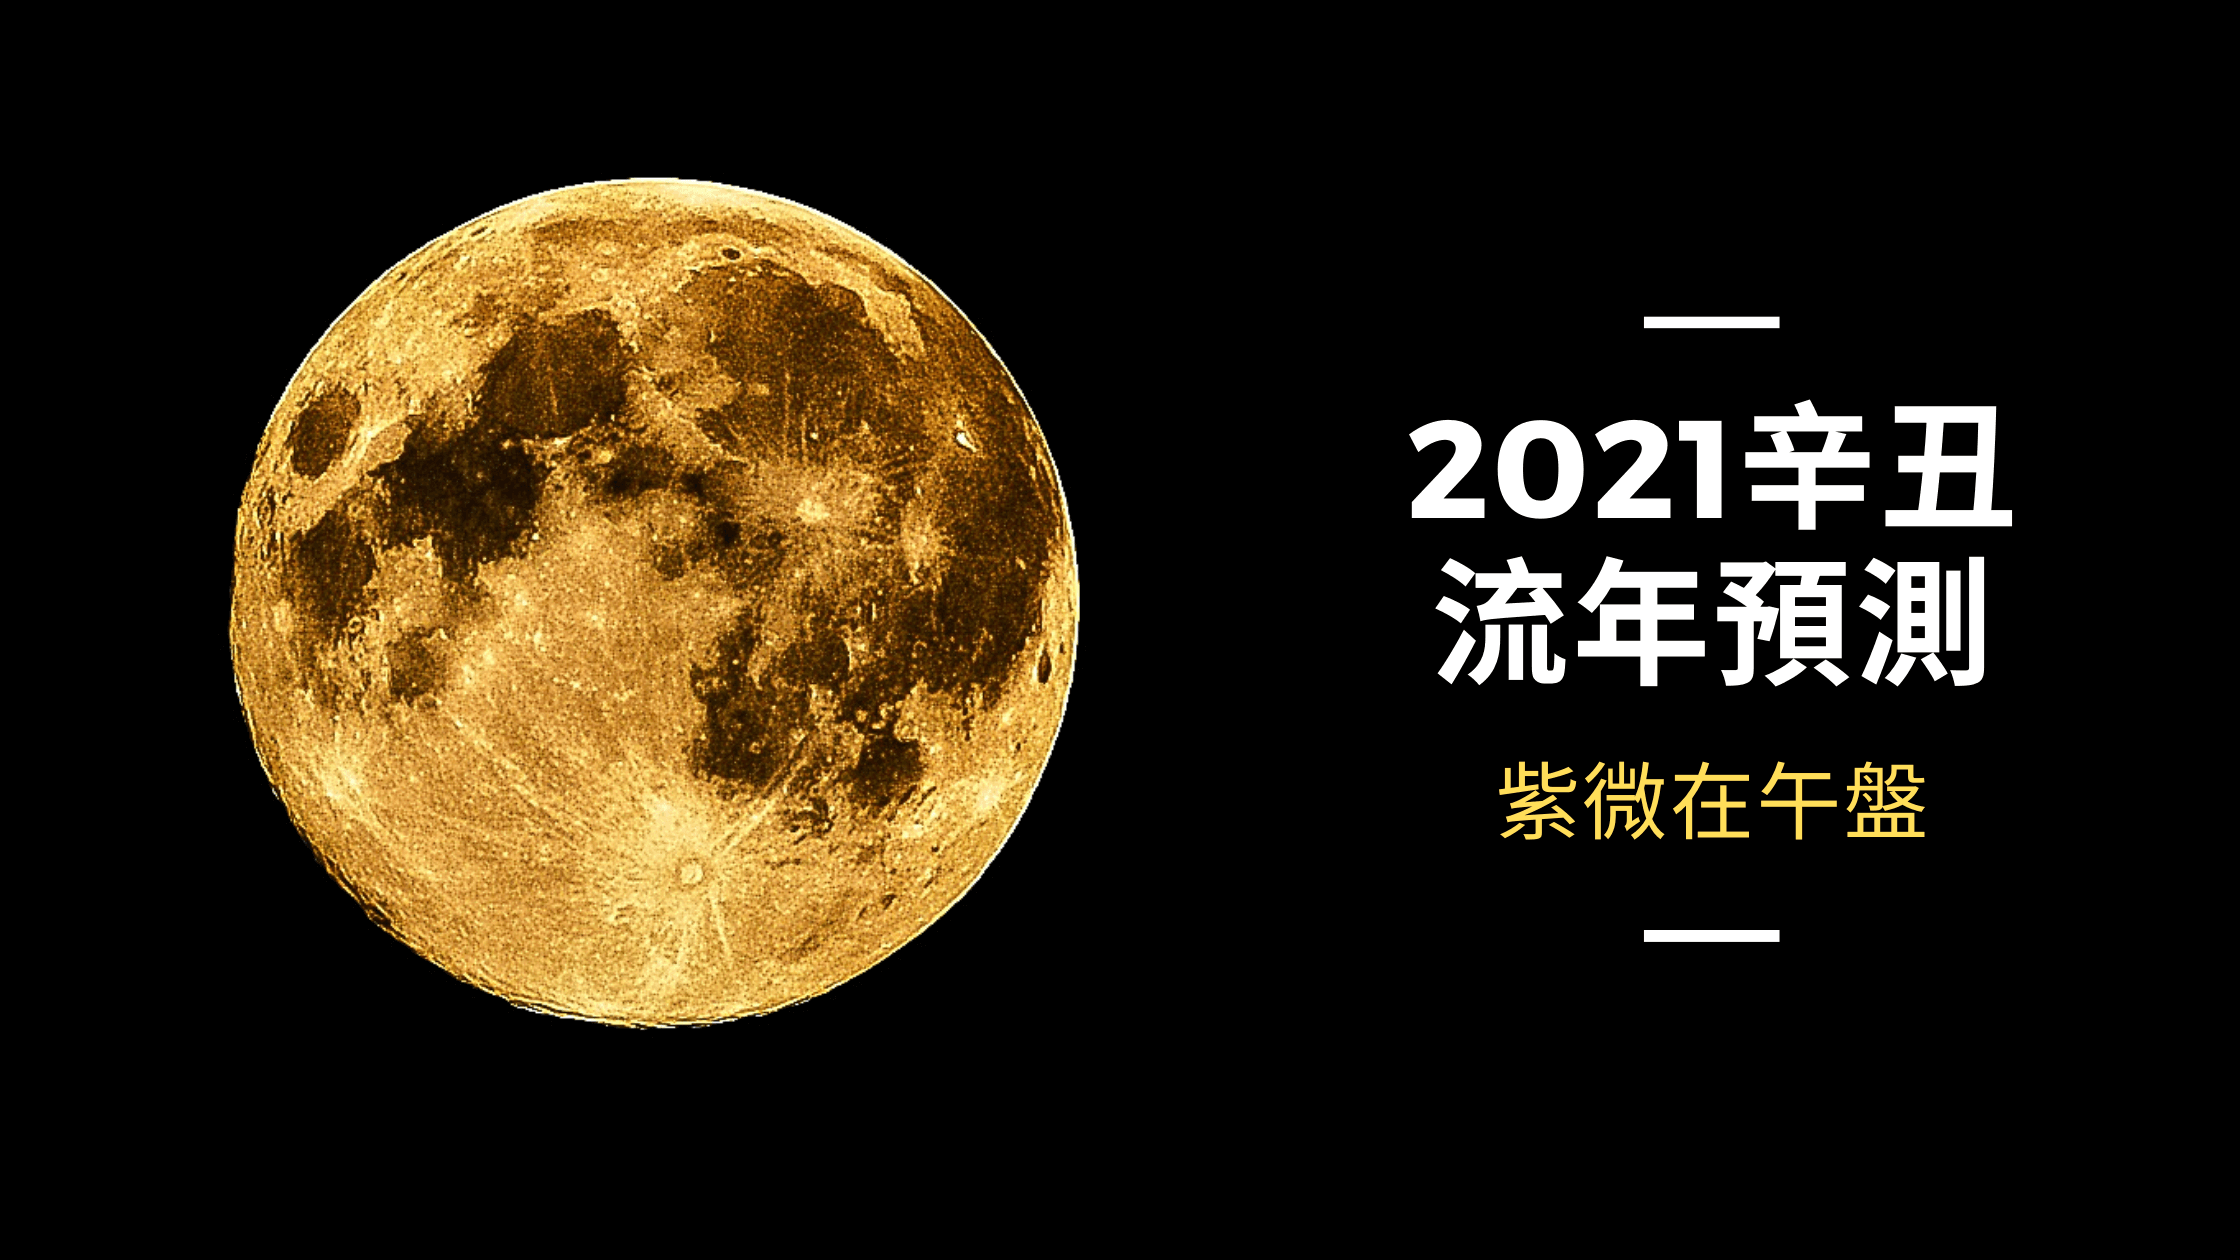 2021辛丑流年預測 - 紫微在午盤